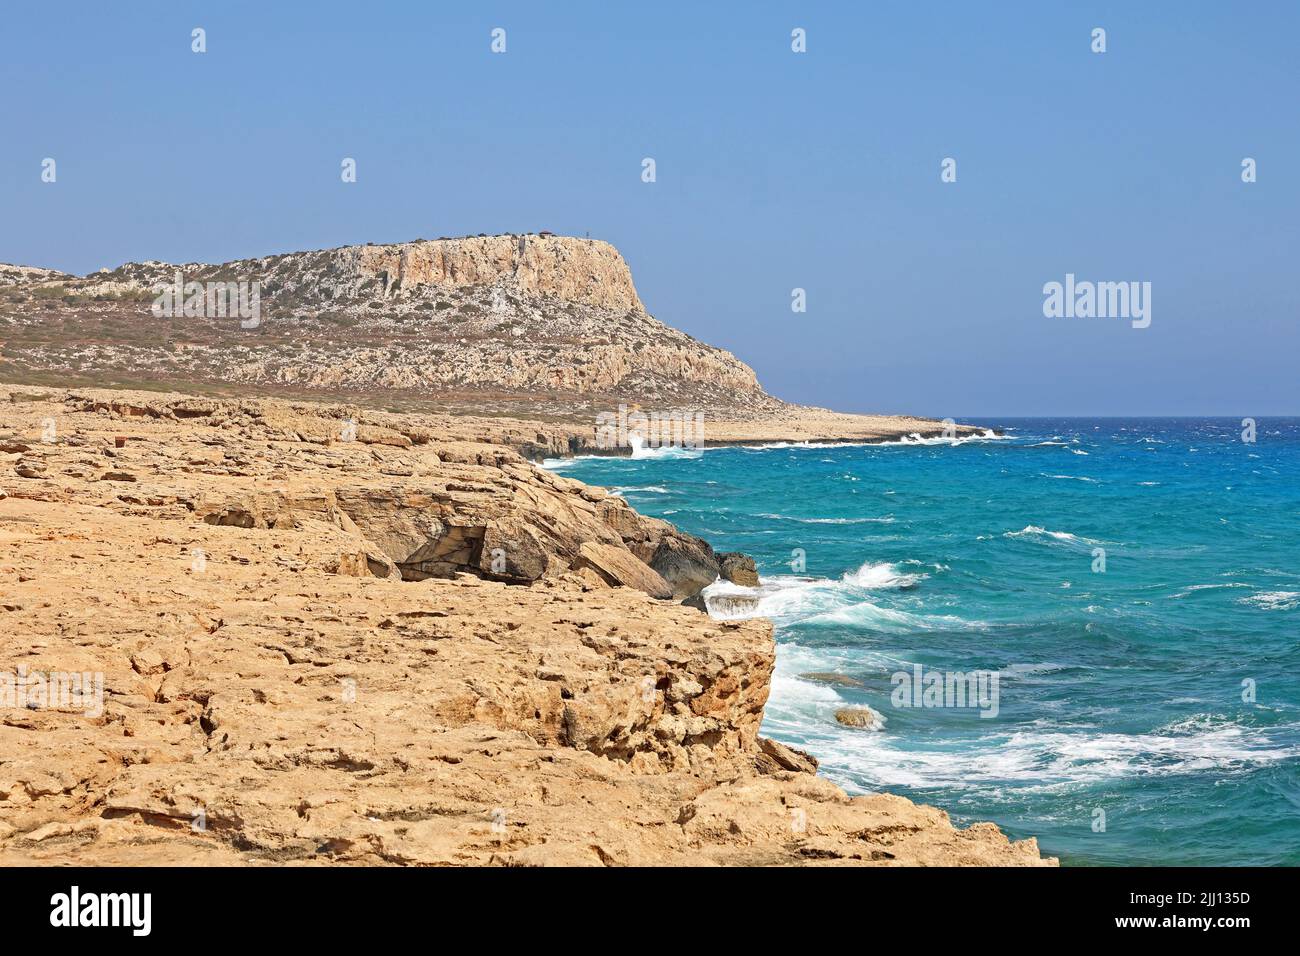 Marina Cape Greco Peninsula Park, Chipre. Es una península montañosa con un parque nacional, una laguna turquesa. Foto de stock